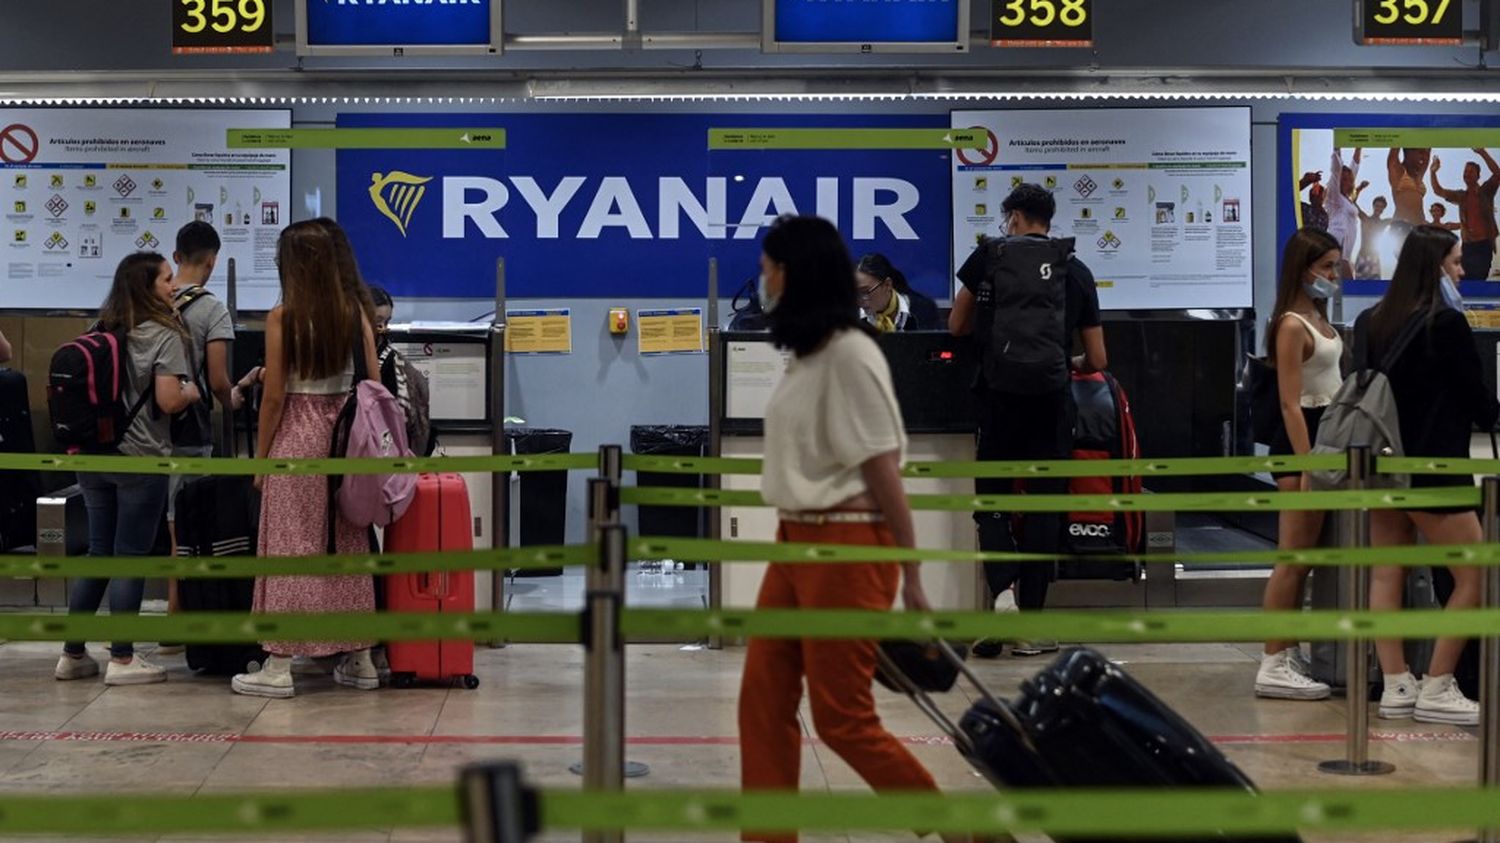 Grève chez Ryanair : des annulations de vol en France, en Belgique et en Espagne - franceinfo